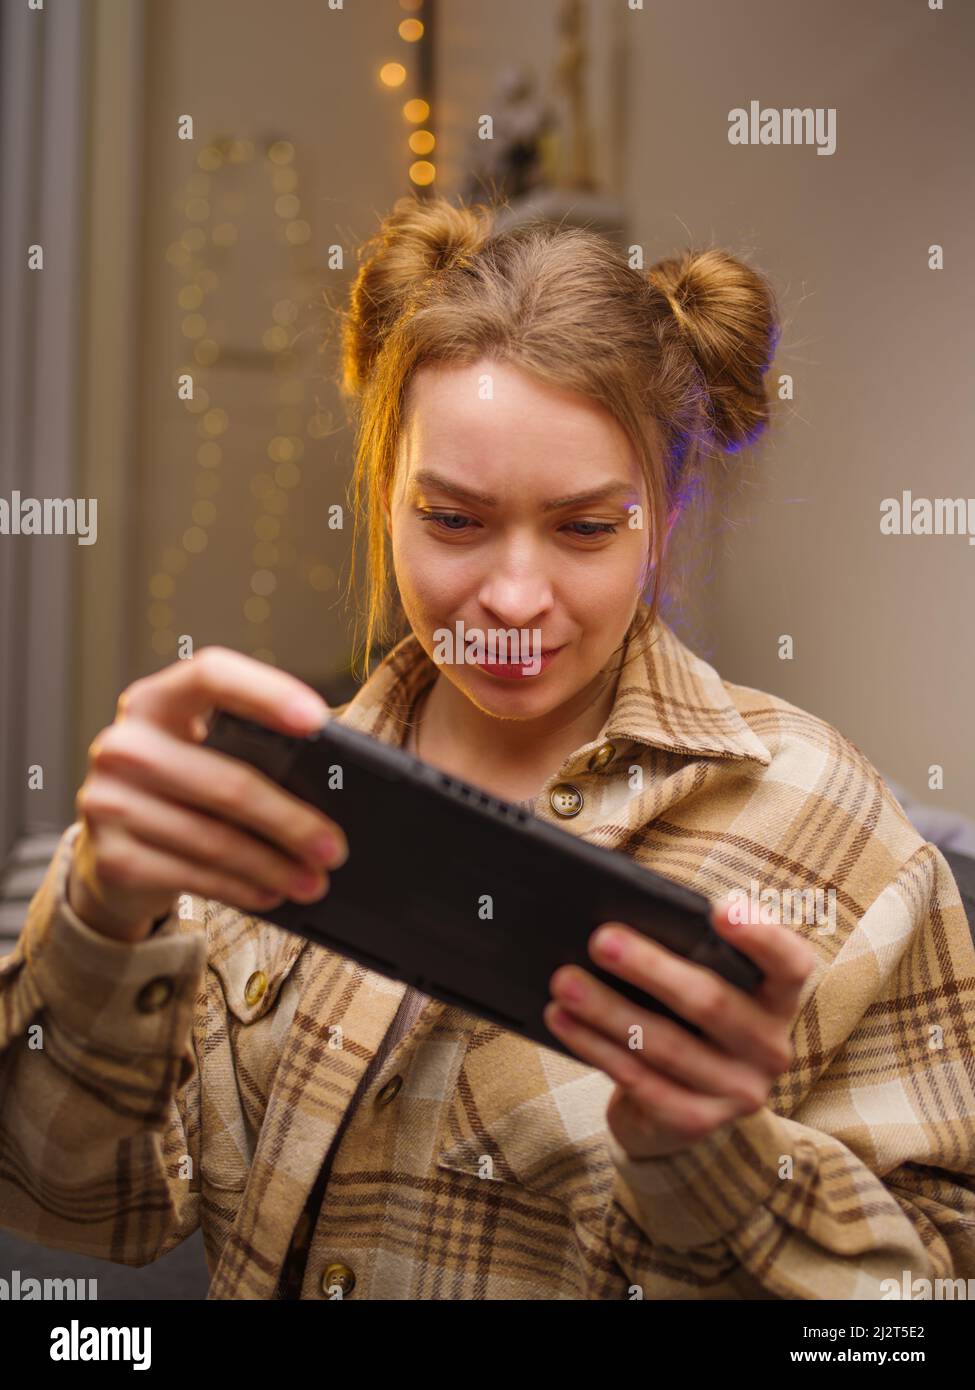 Ein Teenager-Mädchen spielt ein mobiles Spiel auf einer tragbaren Spielkonsole. Nahaufnahme. Das Mädchen schaut aufmerksam auf den Bildschirm. Leidenschaft, Unterhaltung, Erholung Stockfoto